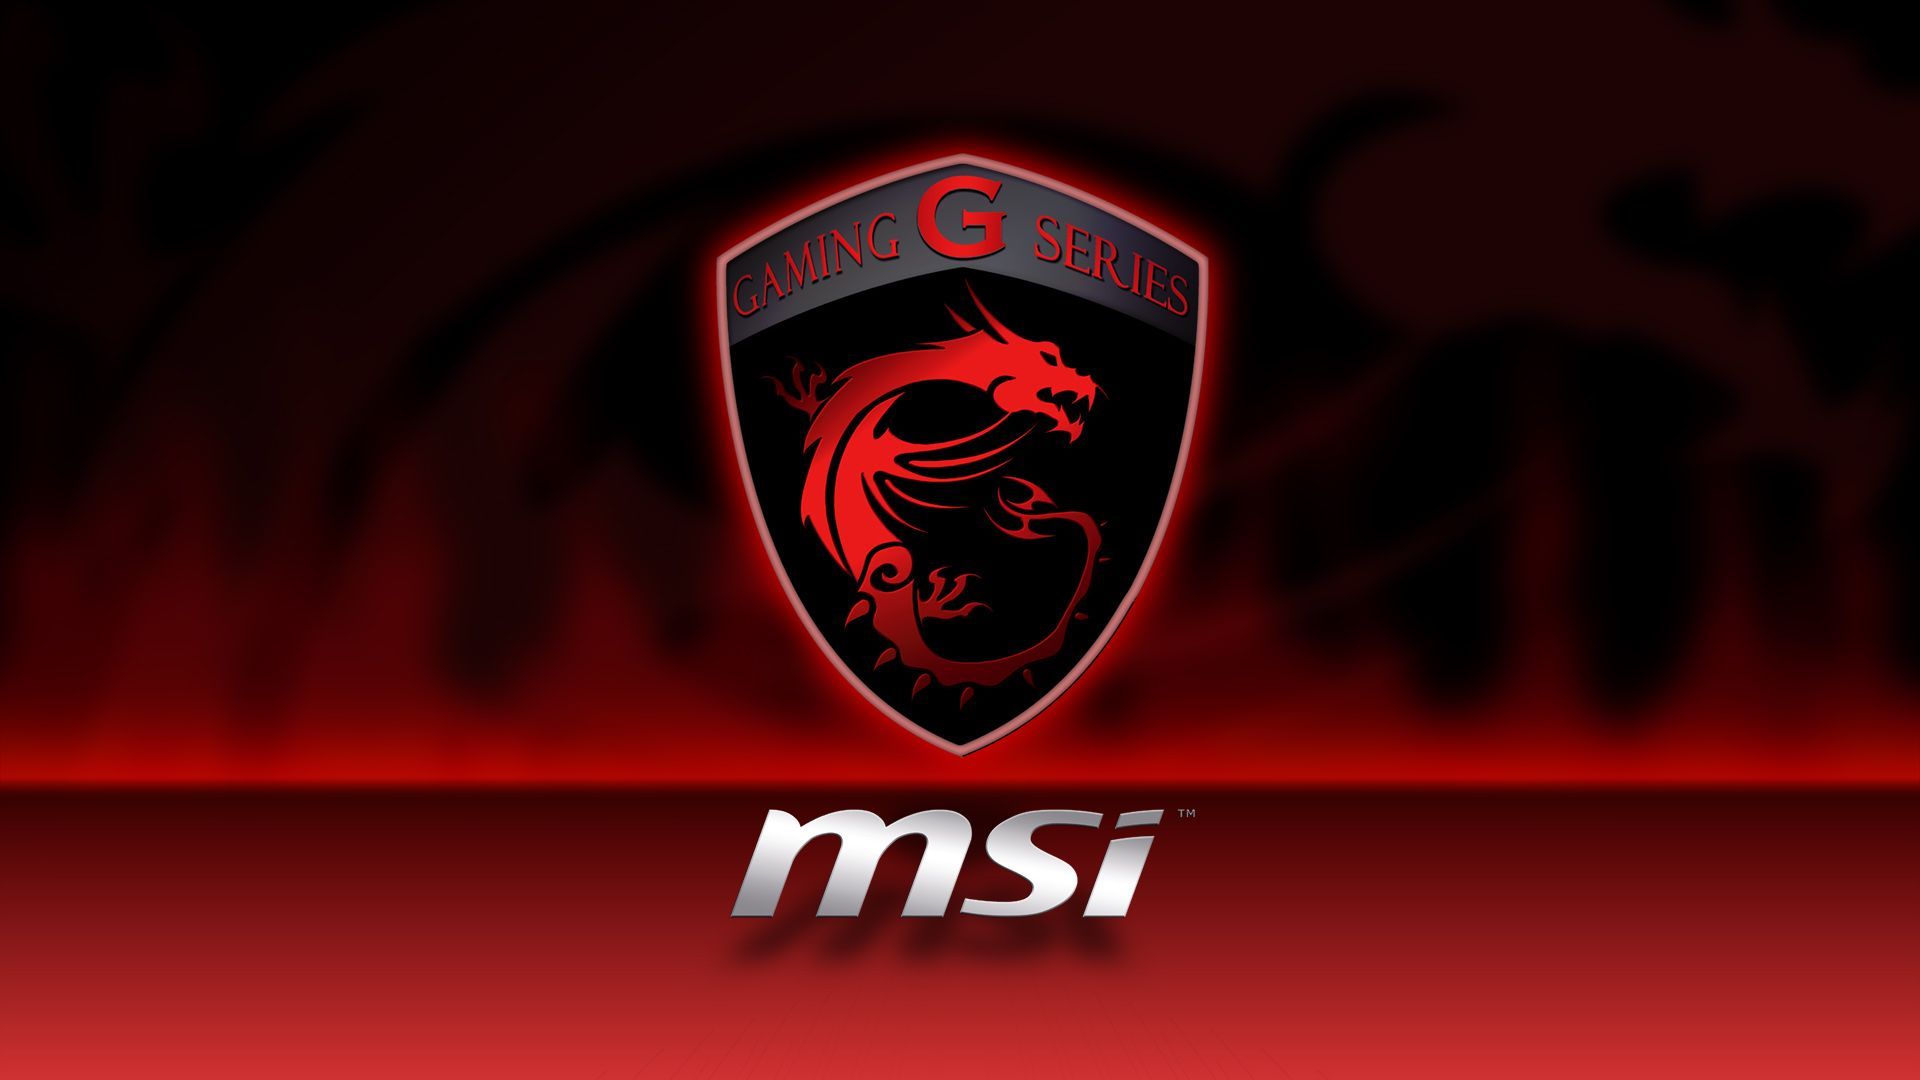 Gaming :'). Msi laptop, Msi logo, Msi